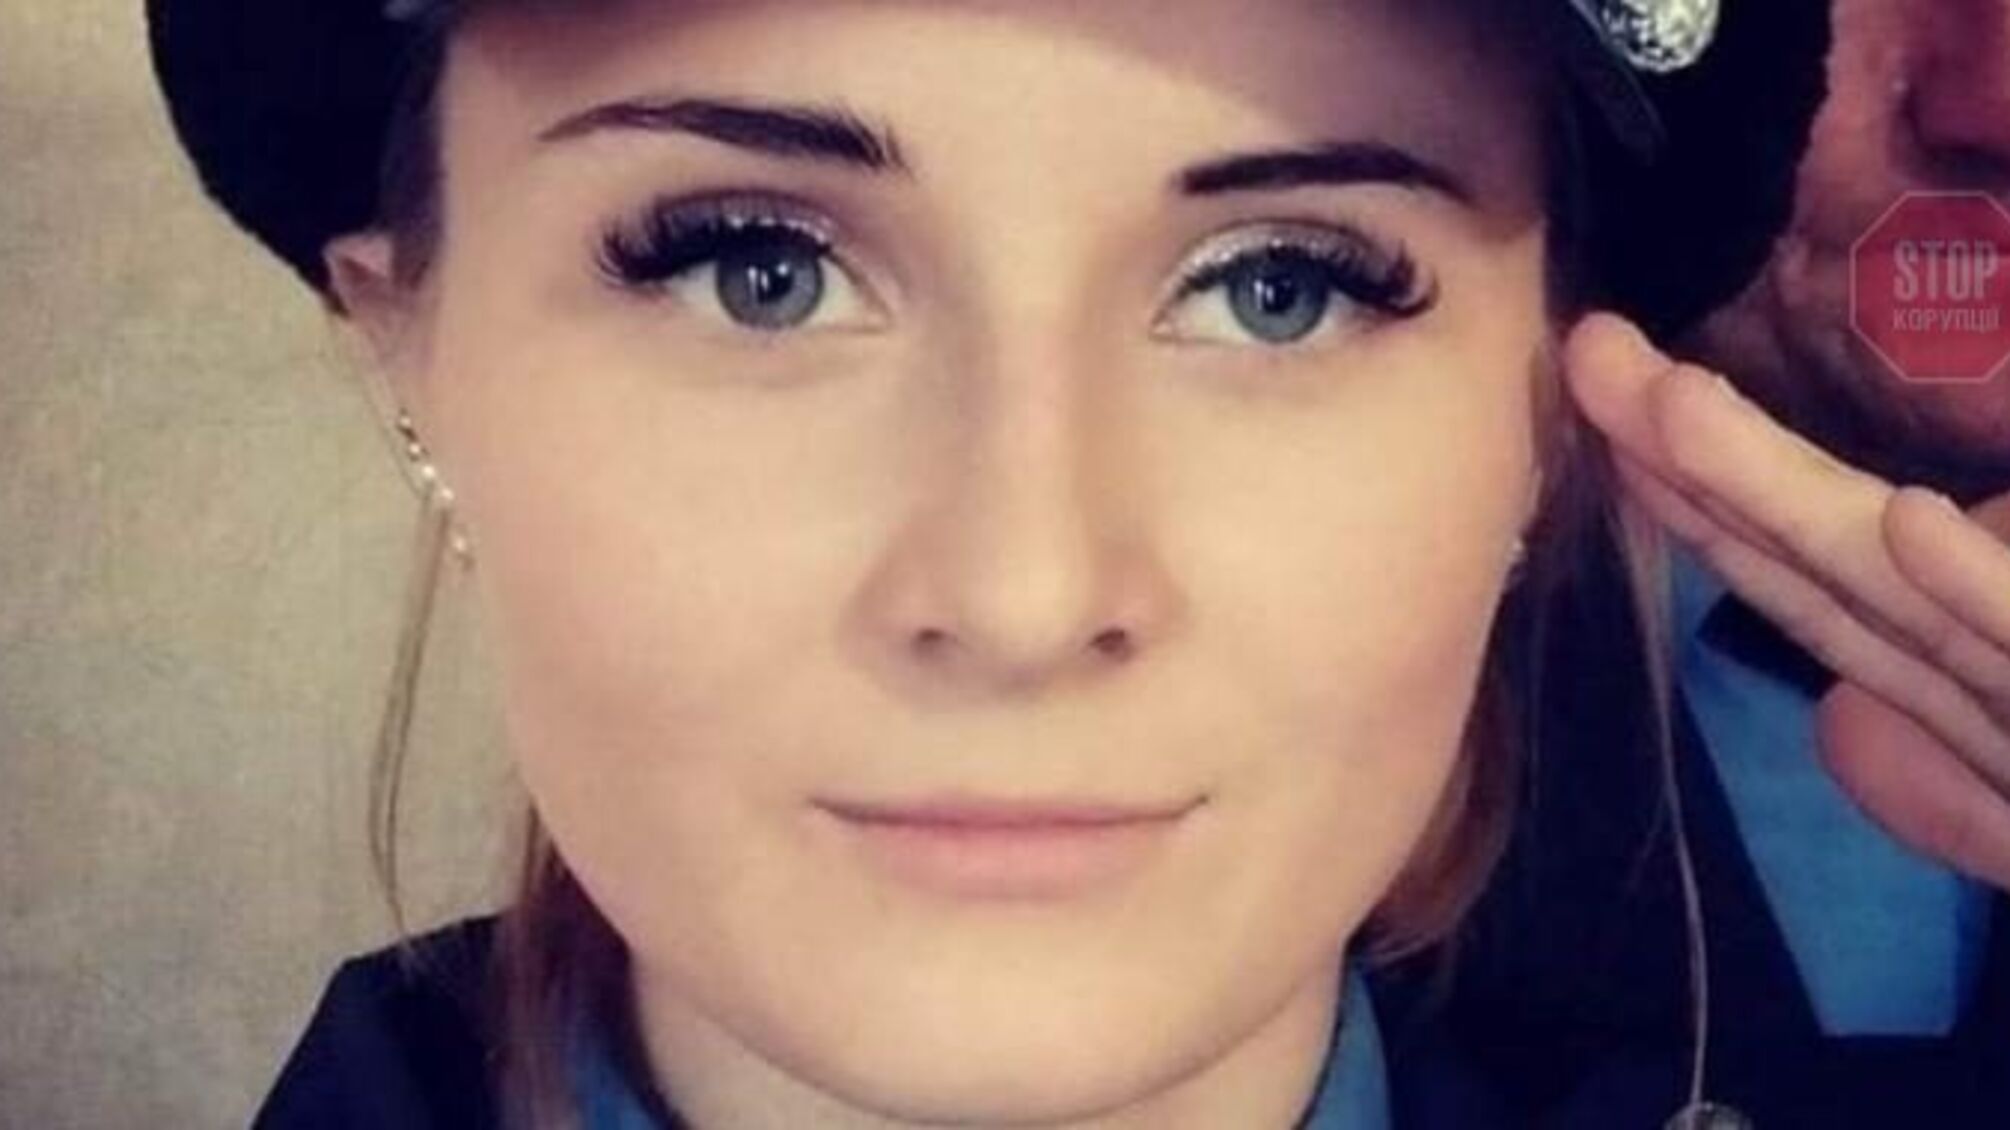 Розстріл нацгвардійців у Дніпрі: 22-річна Жанна Шарова прийшла до тями